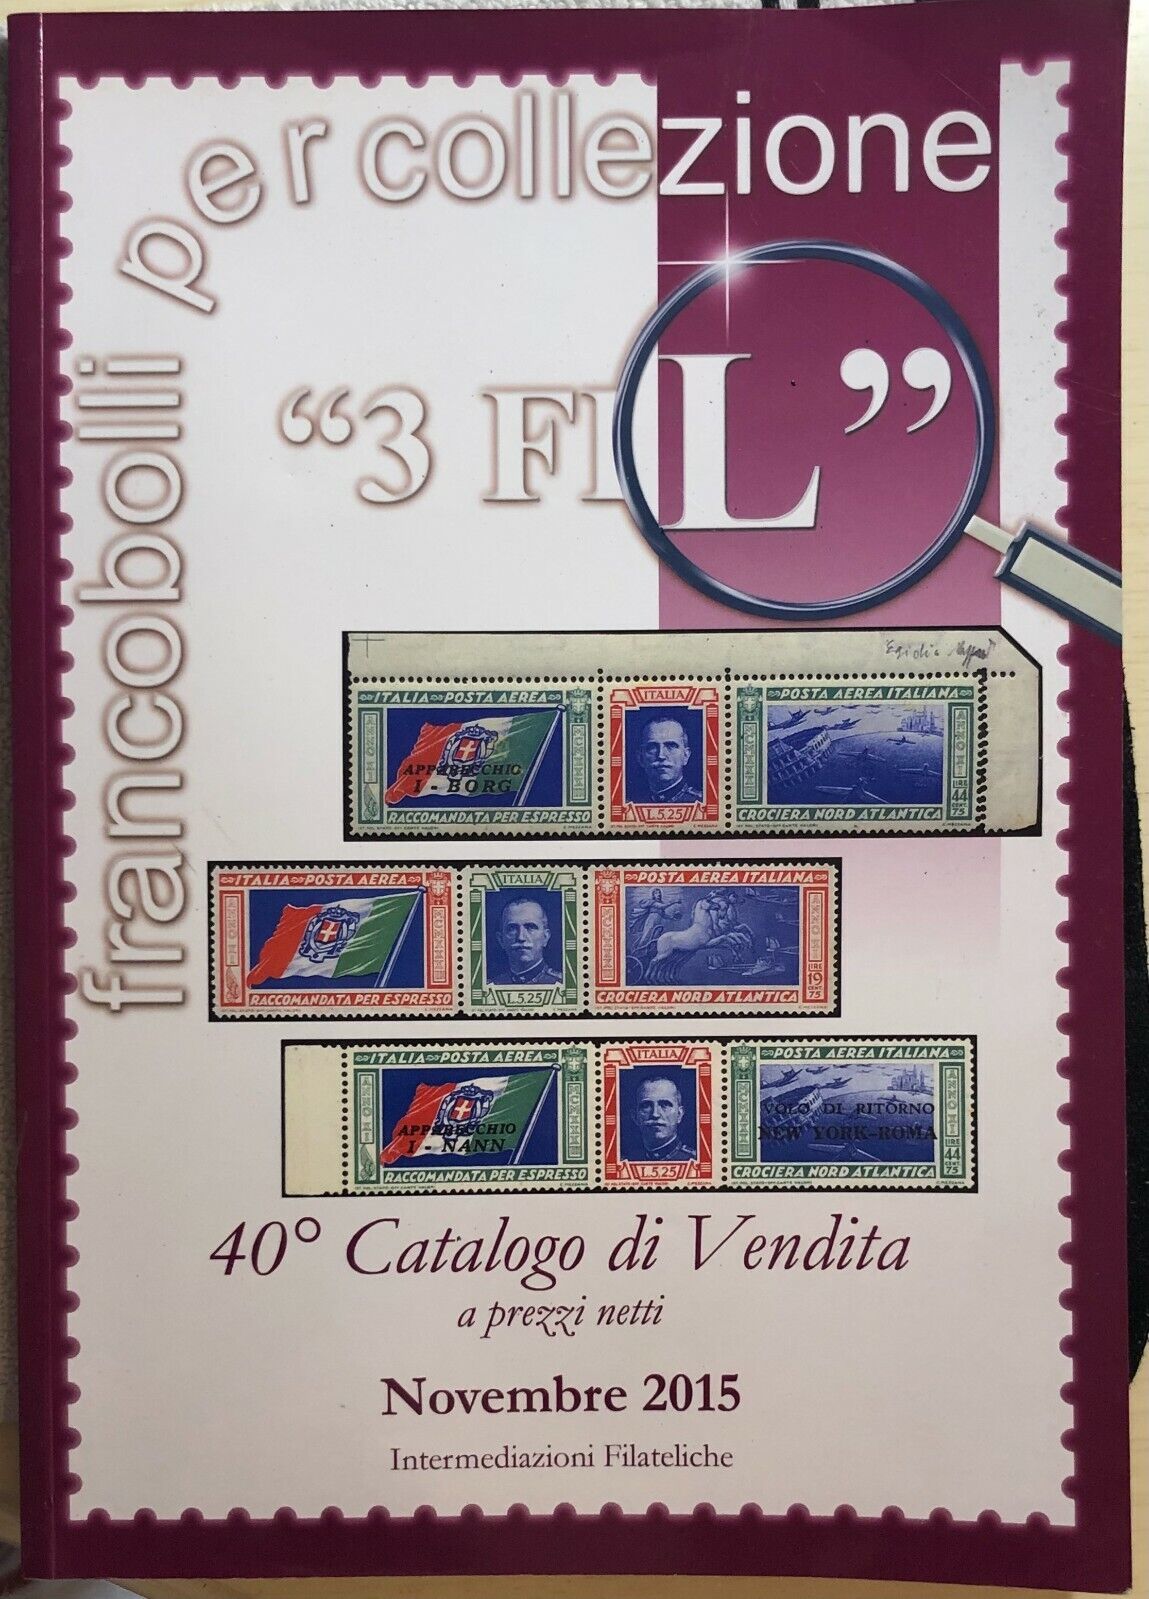 Francobolli per collezione 3 FIL di Aa.vv.,  2015,  3 Fil